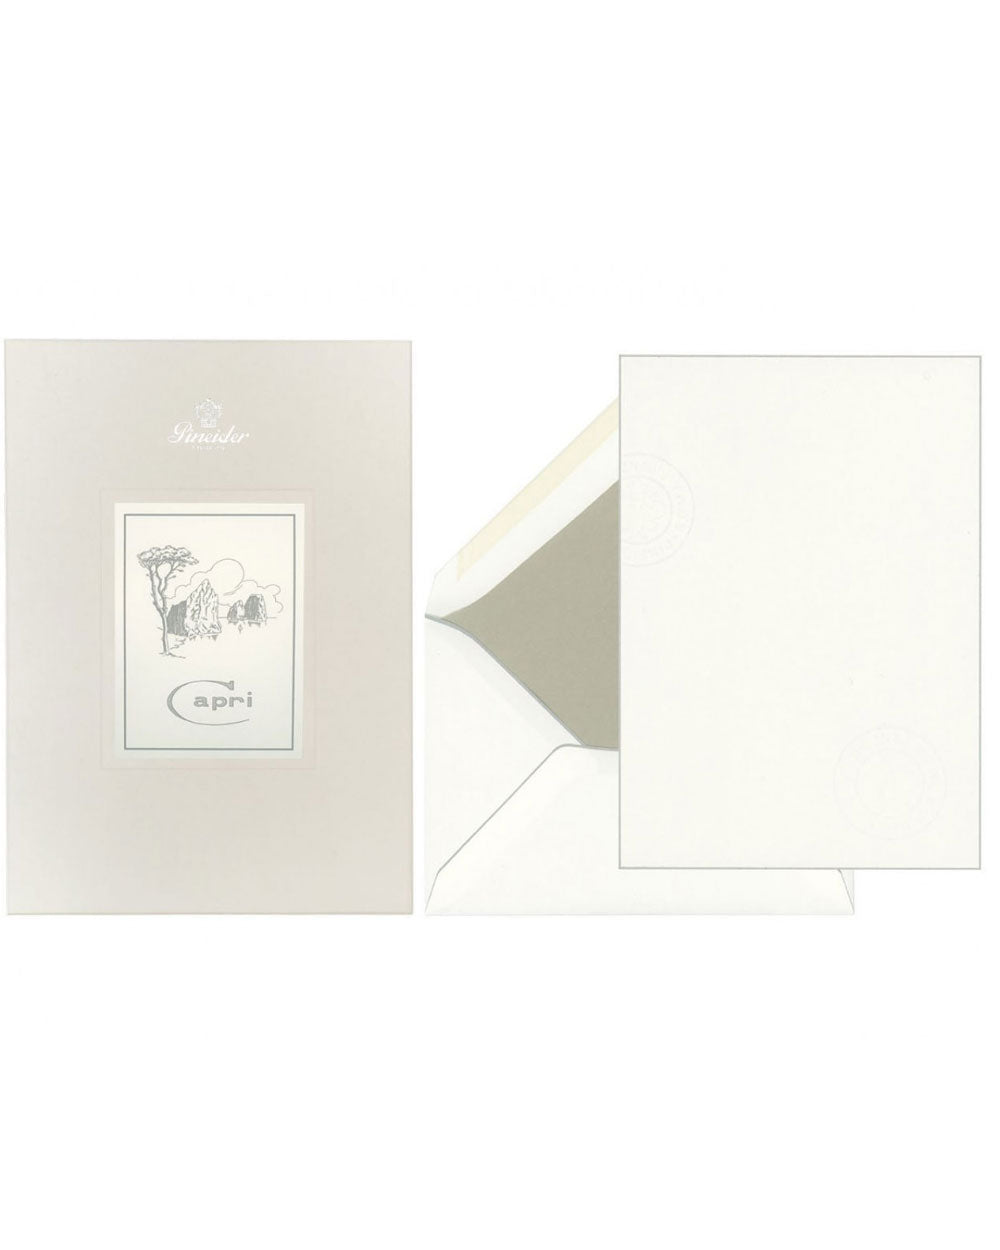 Capri Box A5 Writing Paper in Bianco and Grigio